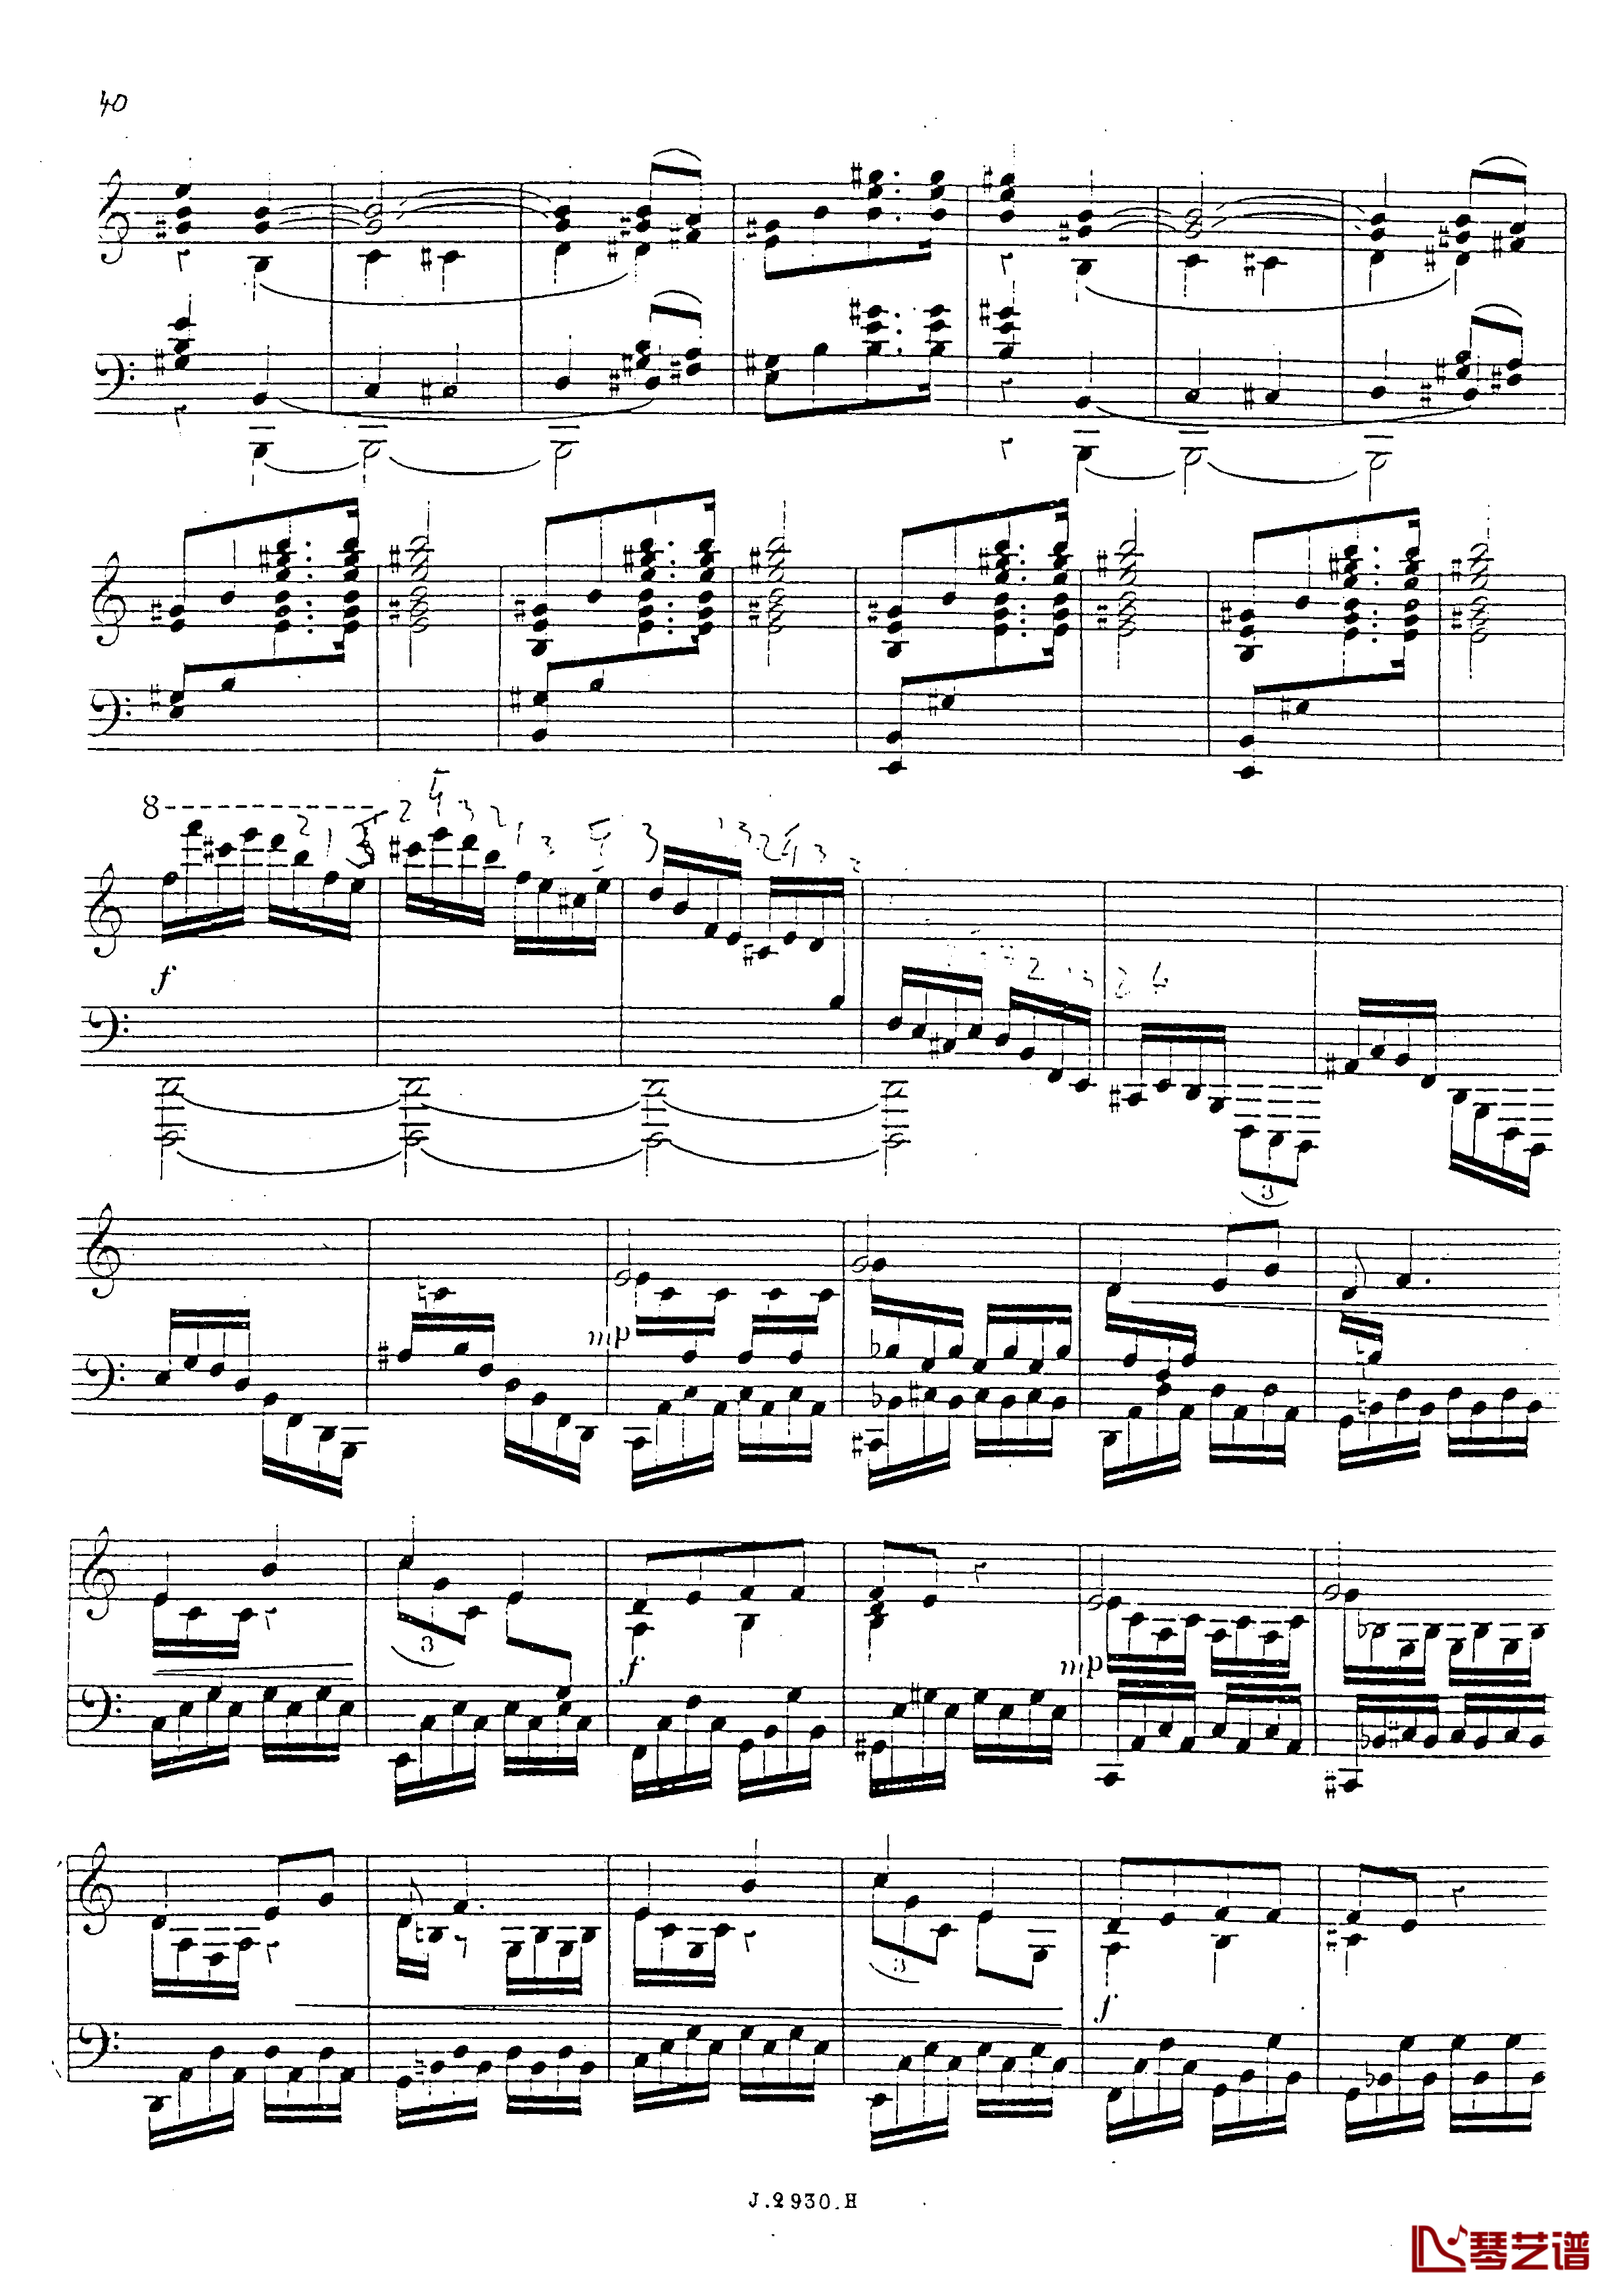 a小调第四钢琴奏鸣曲钢琴谱-安东 鲁宾斯坦- Op.10041